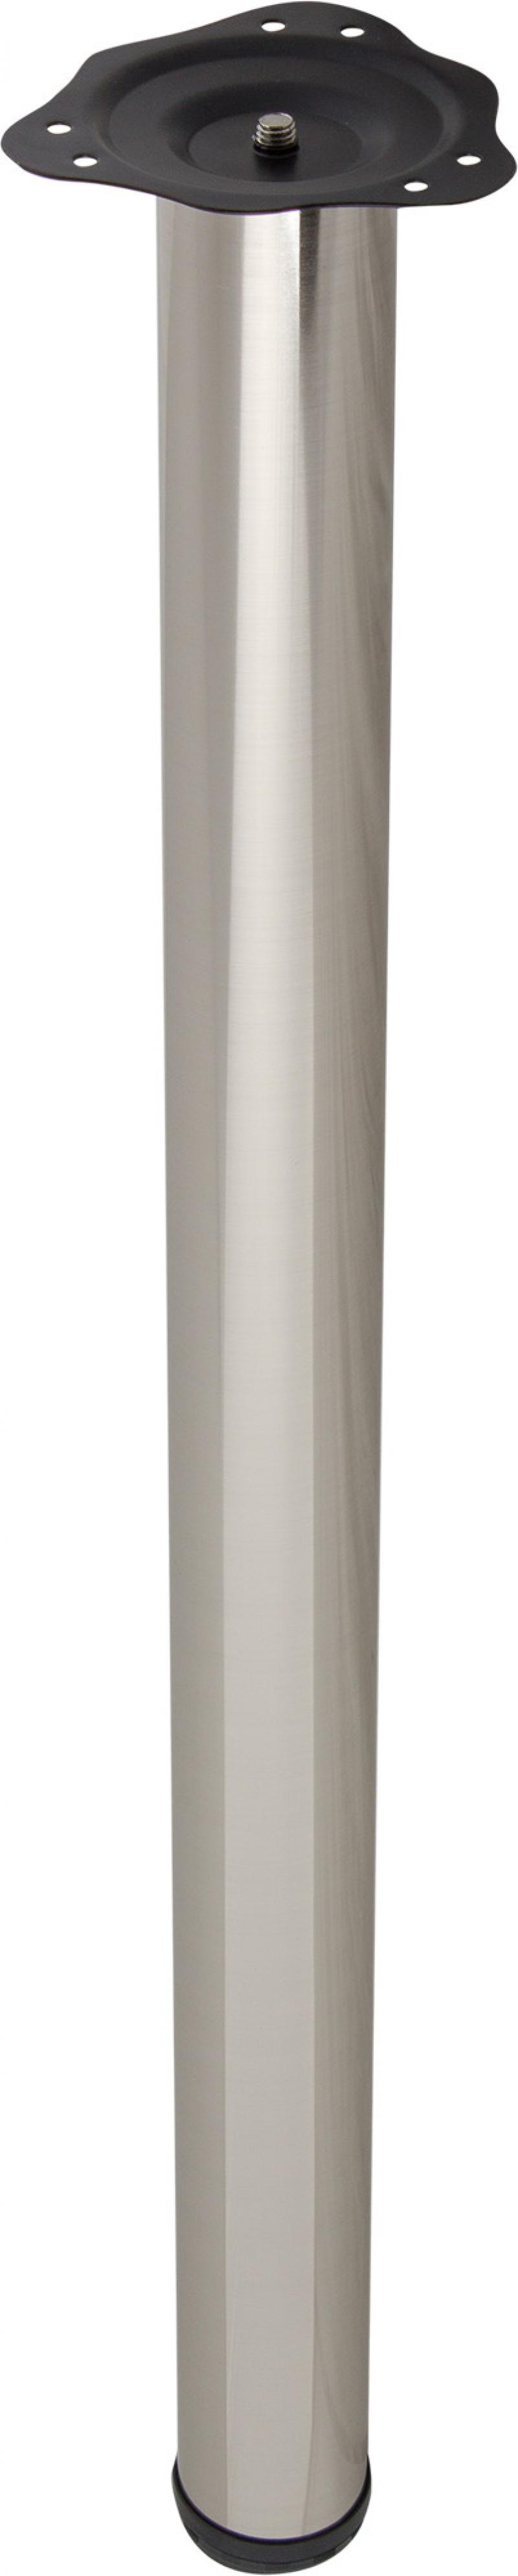 Ножка регулируемая TL-009 820 мм сталь максимальная нагрузка 50 кг цвет никель